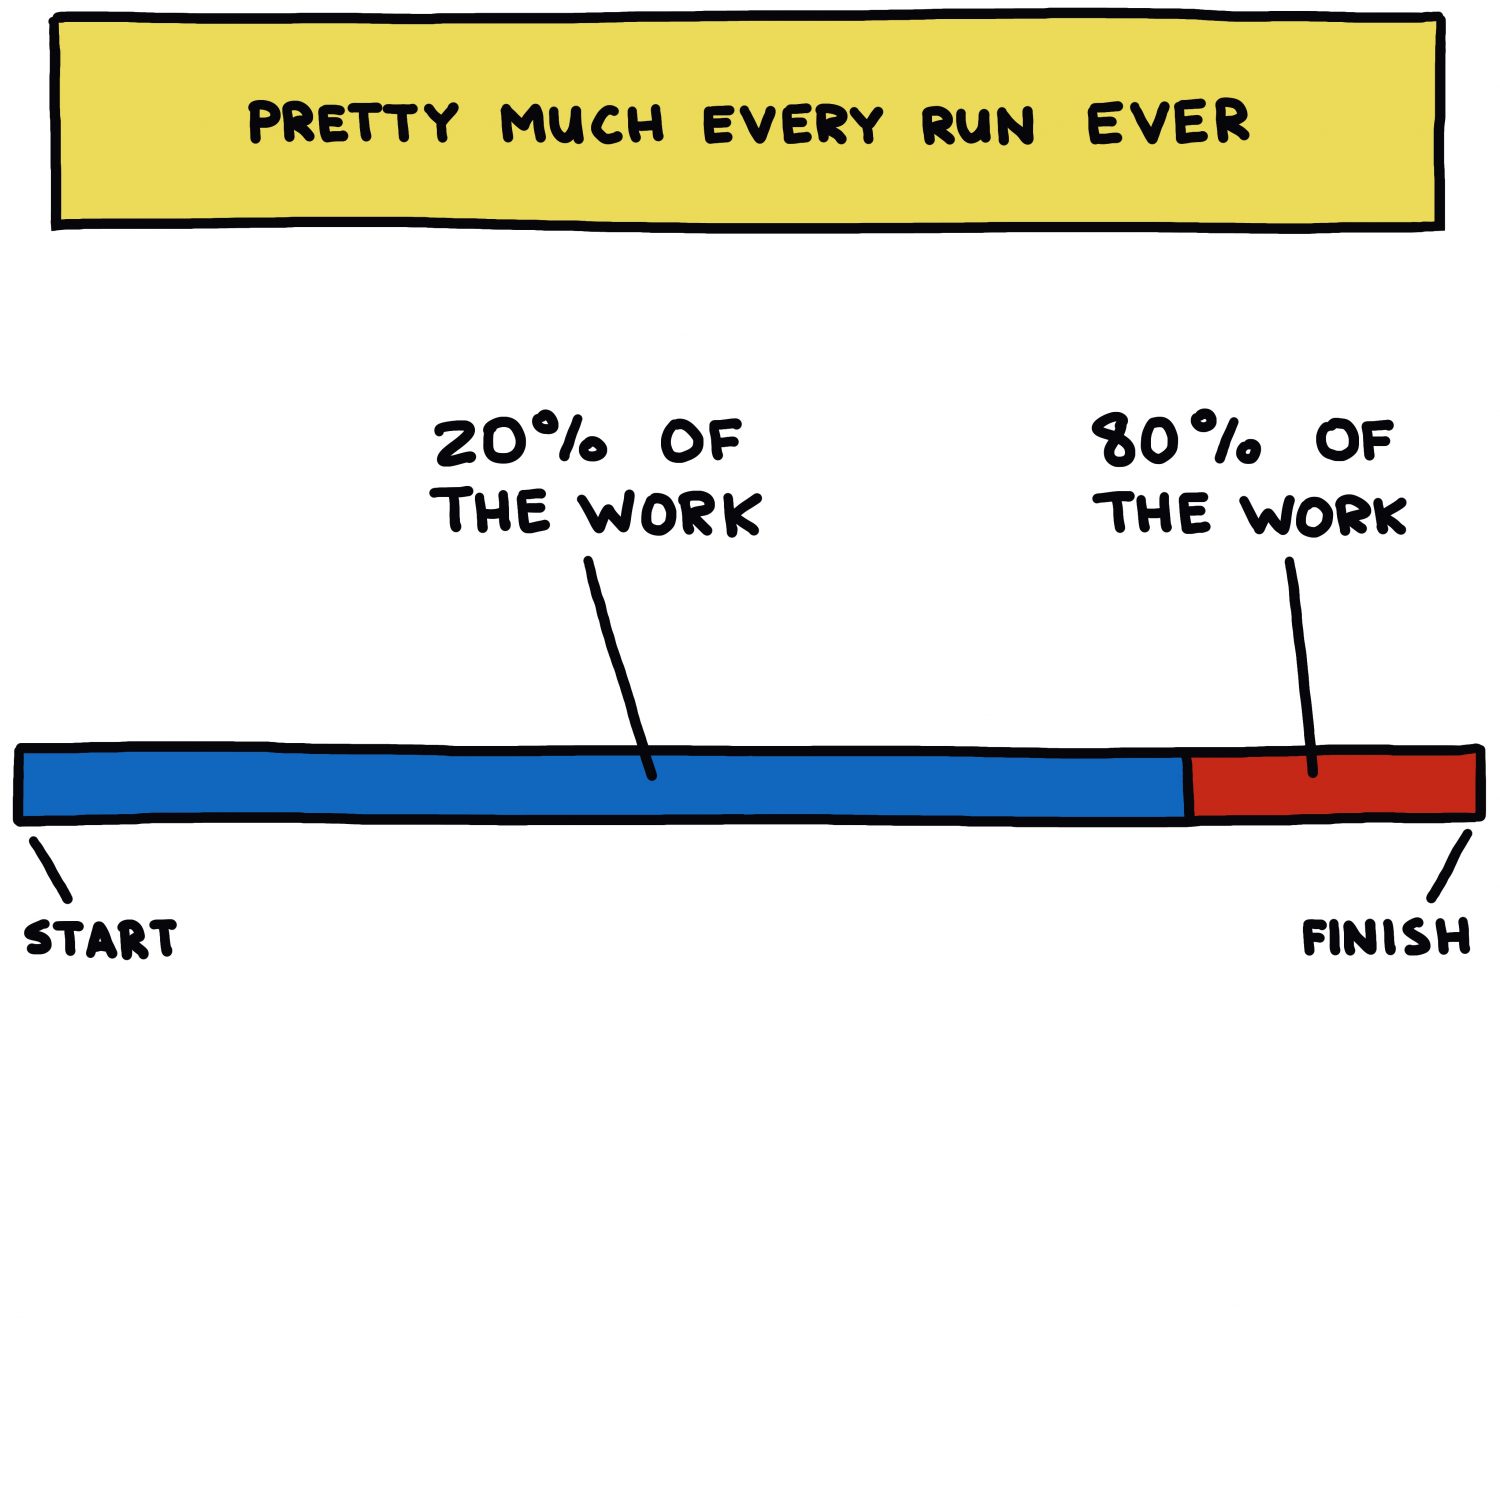 semi-rad chart: Pretty much every run ever